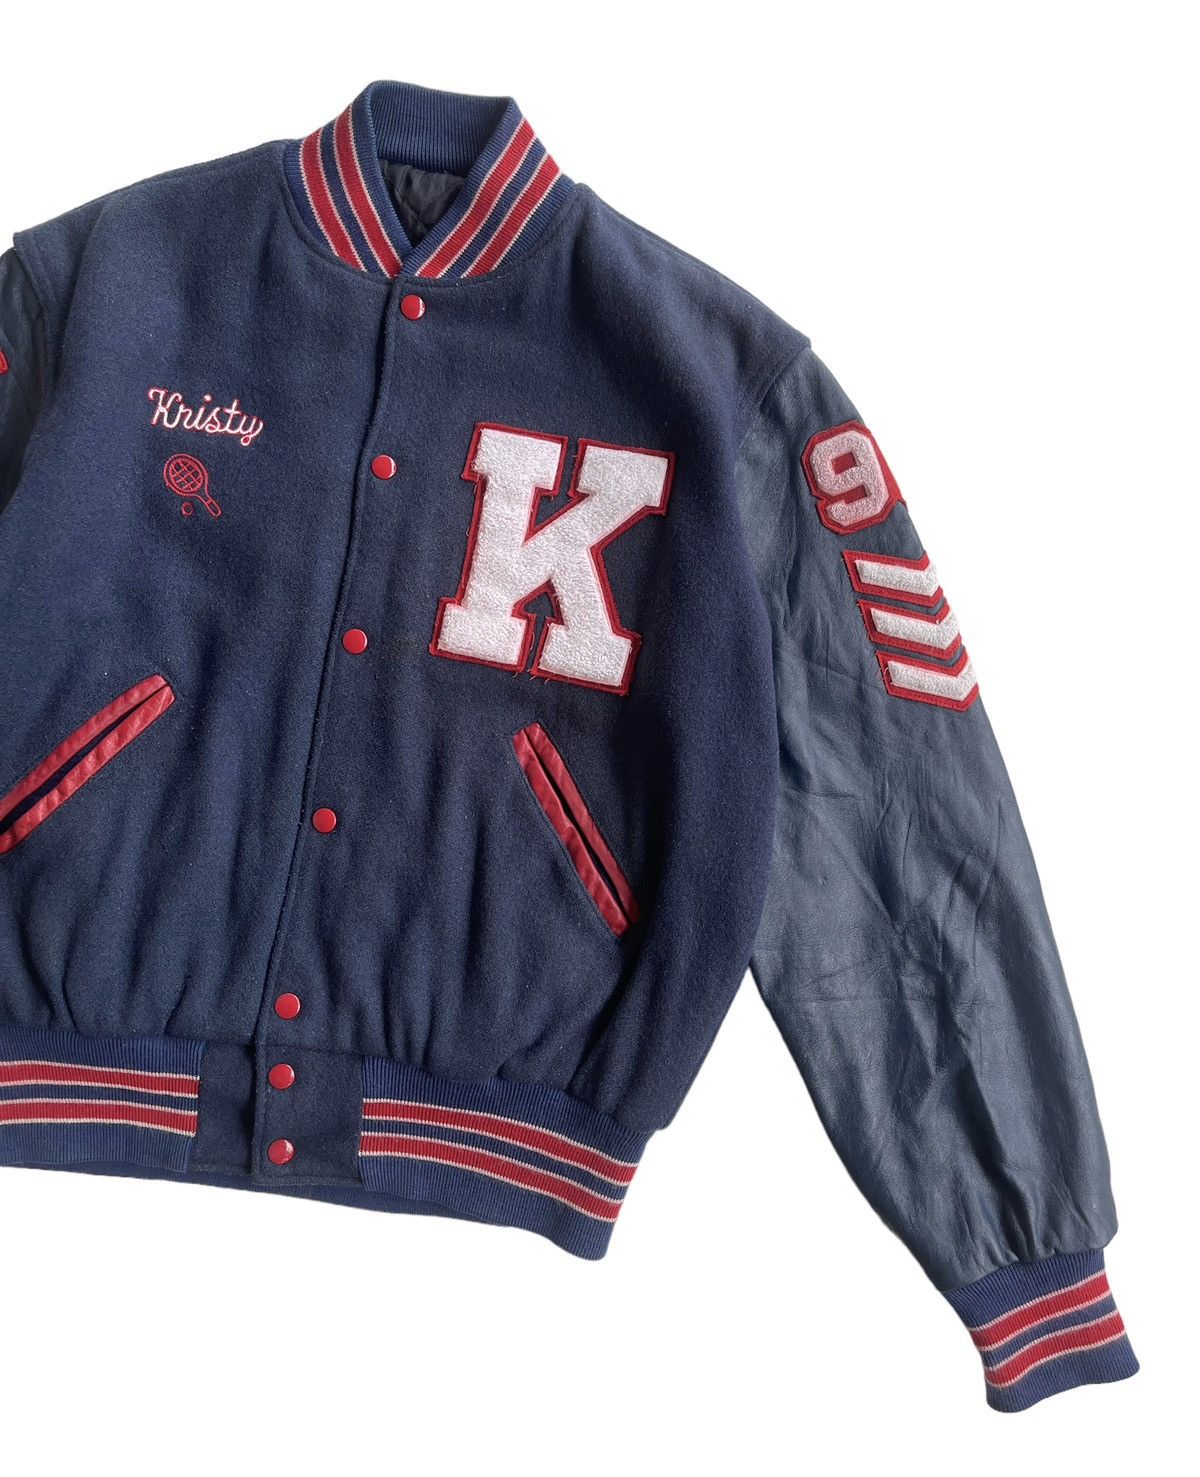 Vintage Vintage 70s Delong Kennedy Varsity Jacket Size US M / EU 48-50 / 2 - 5 Thumbnail